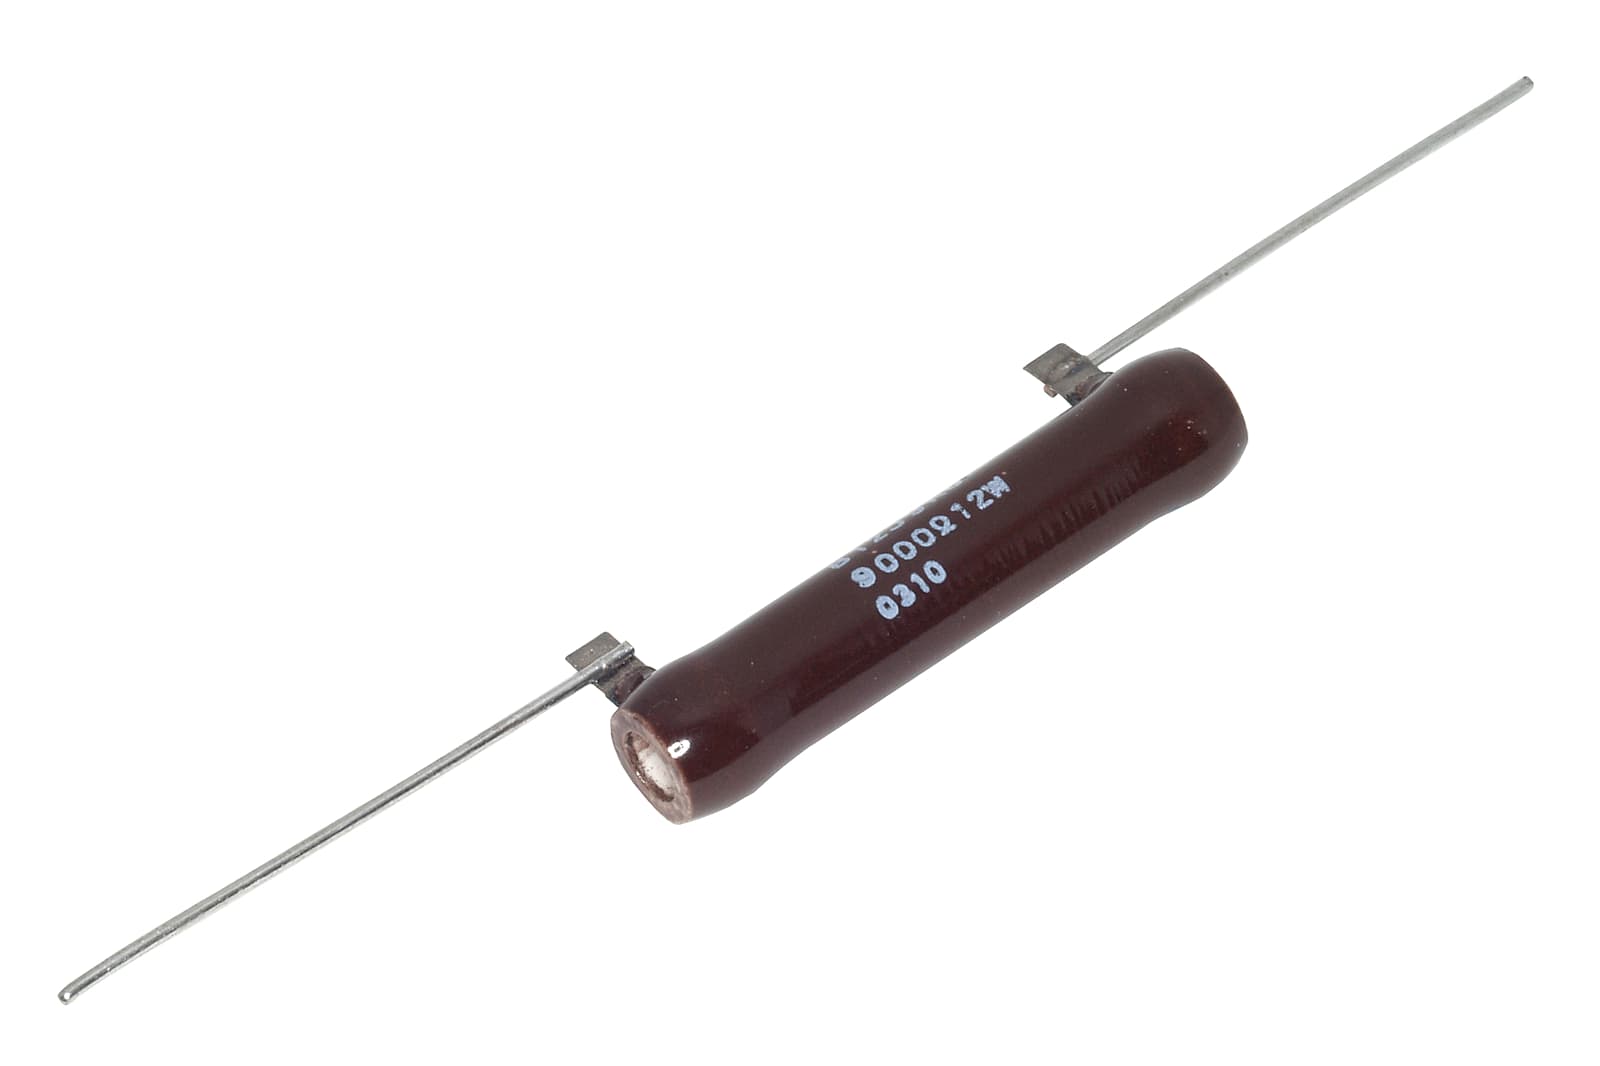 Ohmite Brown Power Wirewound Resistor B8J150 8W 8 Watt 150 Ohm 150Ohm Electronic